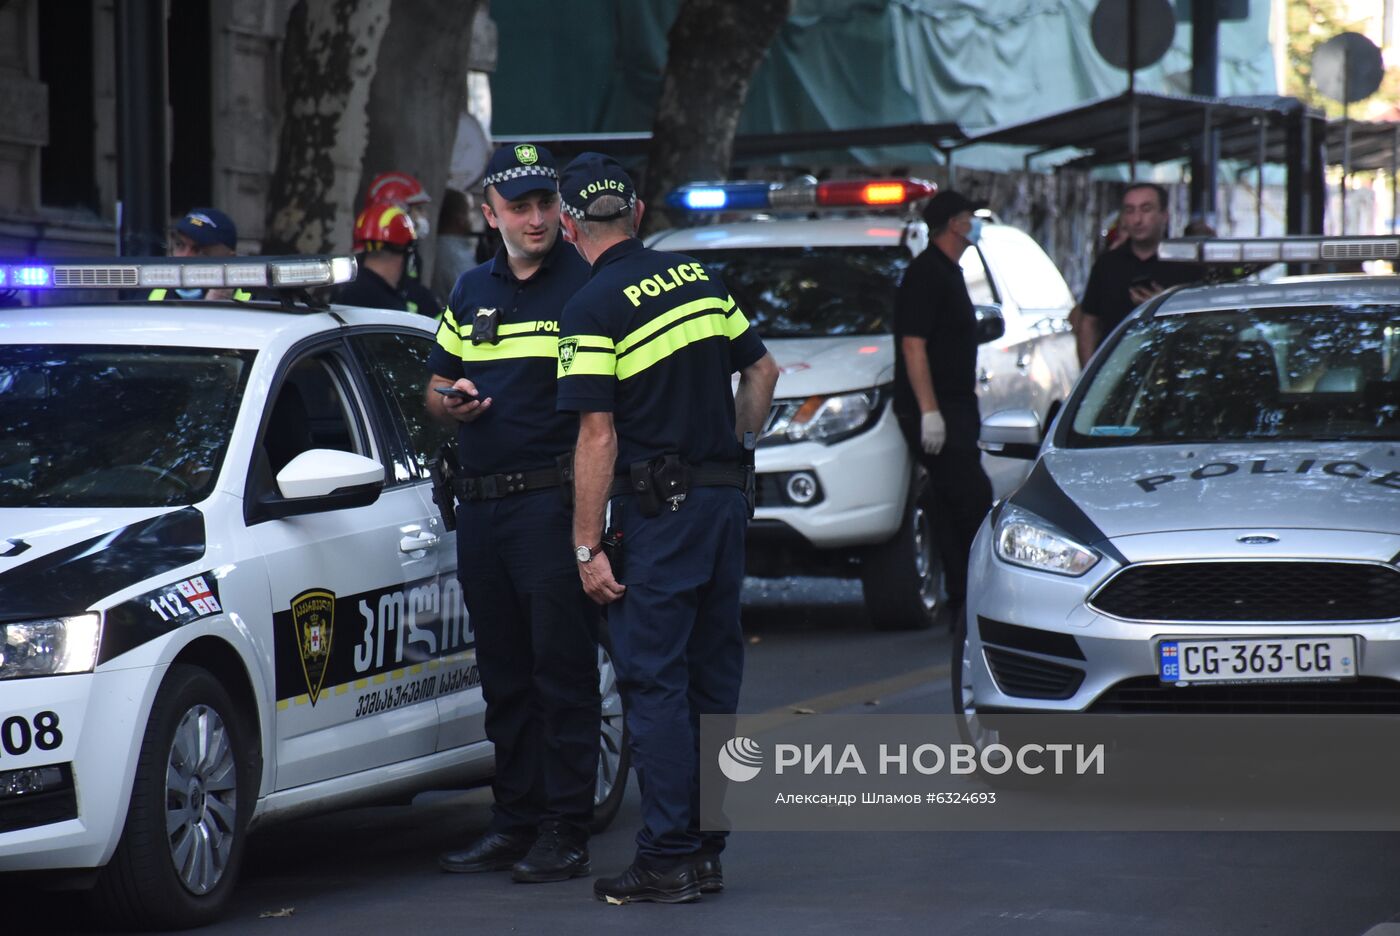 Взрыв произошел в центре Тбилиси